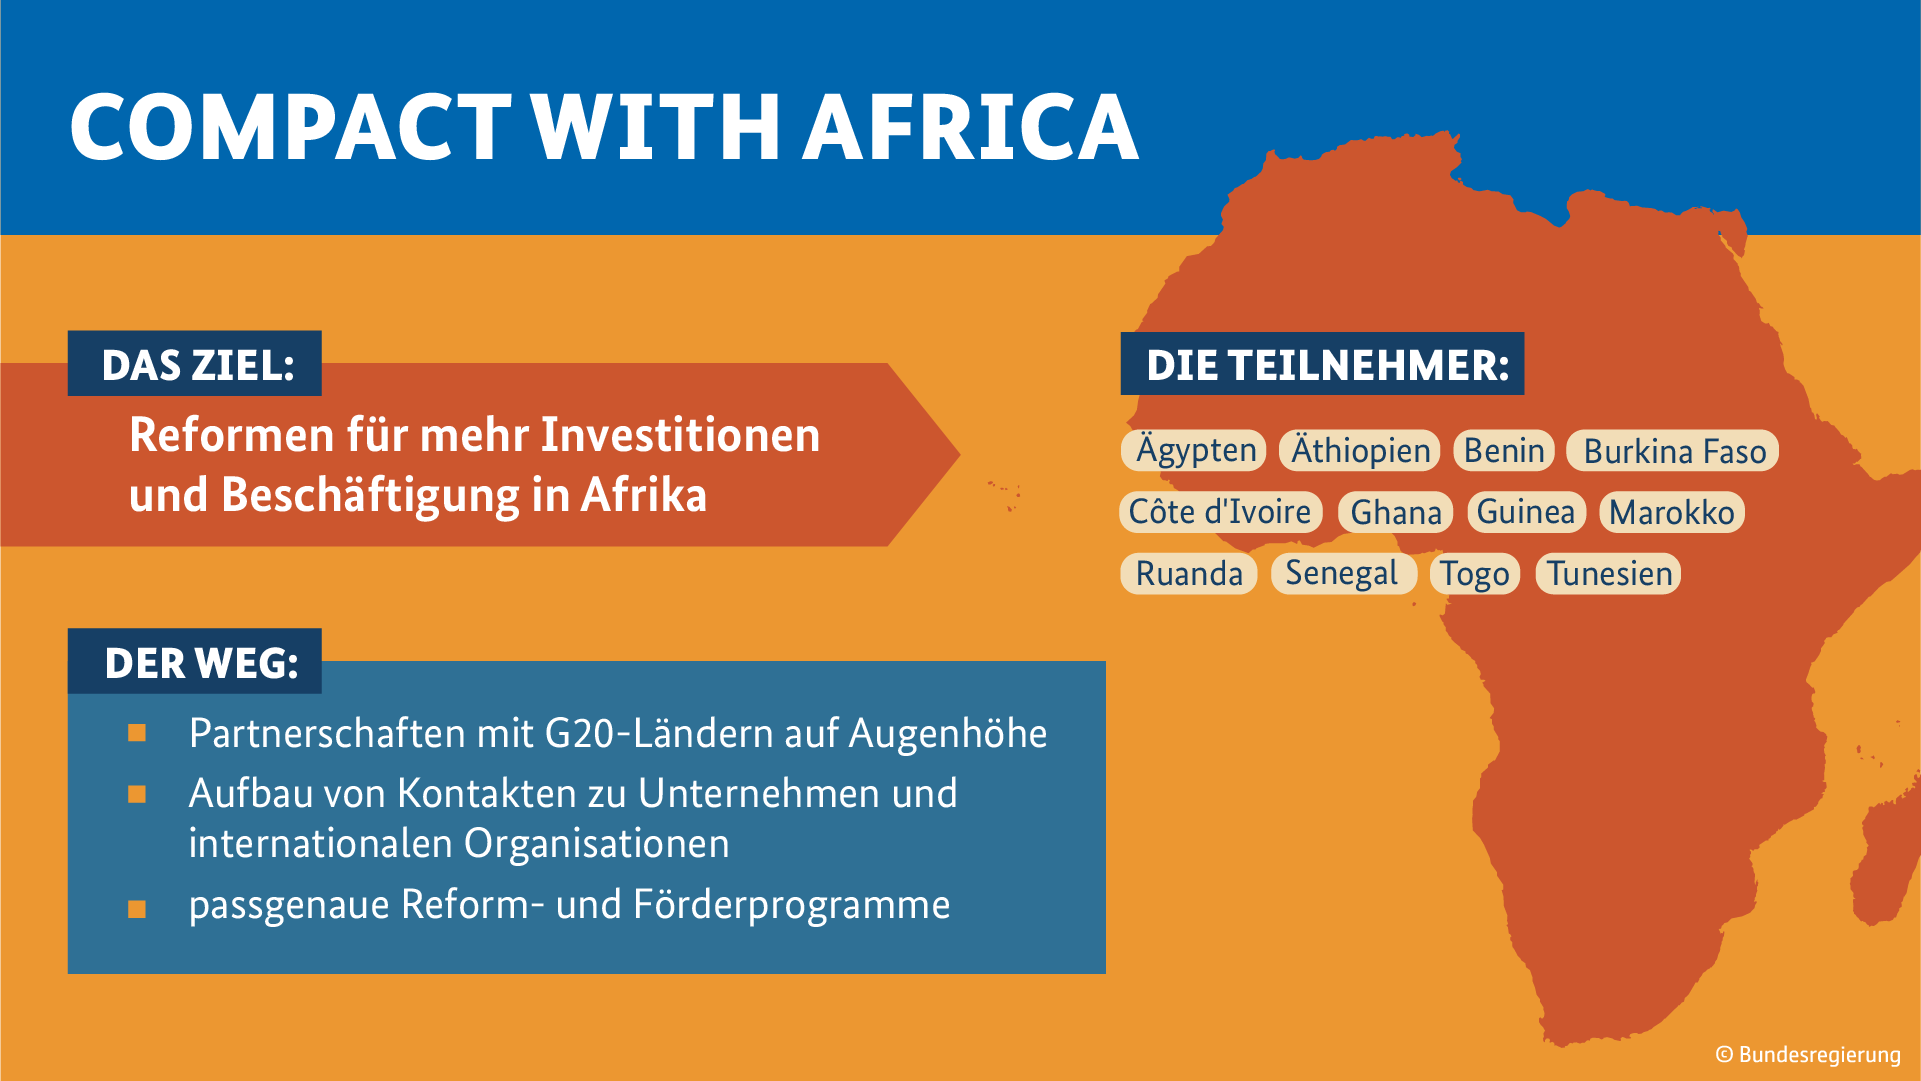 Die Grafik trägt den Titel "Compact with Africa" (Weitere Beschreibung unterhalb des Bildes ausklappbar als "ausführliche Beschreibung")